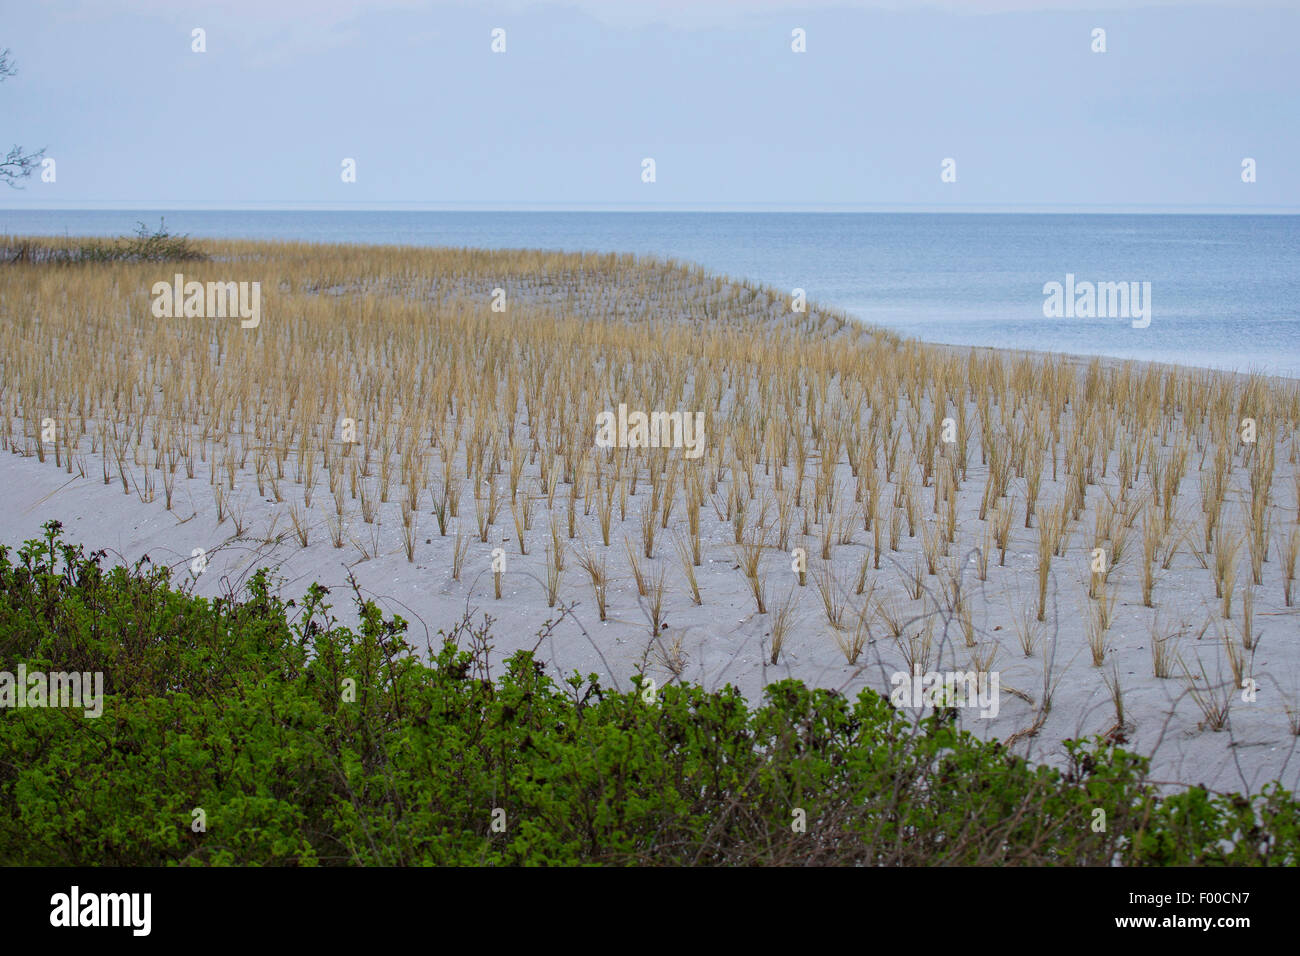 Plage de l'herbe, d'oyats européenne, l'ammophile, psamma, sable de mer-reed (Ammophila arenaria), plantation de végétation des dunes avec des herbes pour la protection de la côte de la plage, l'Allemagne, l'Boltenhagen Banque D'Images